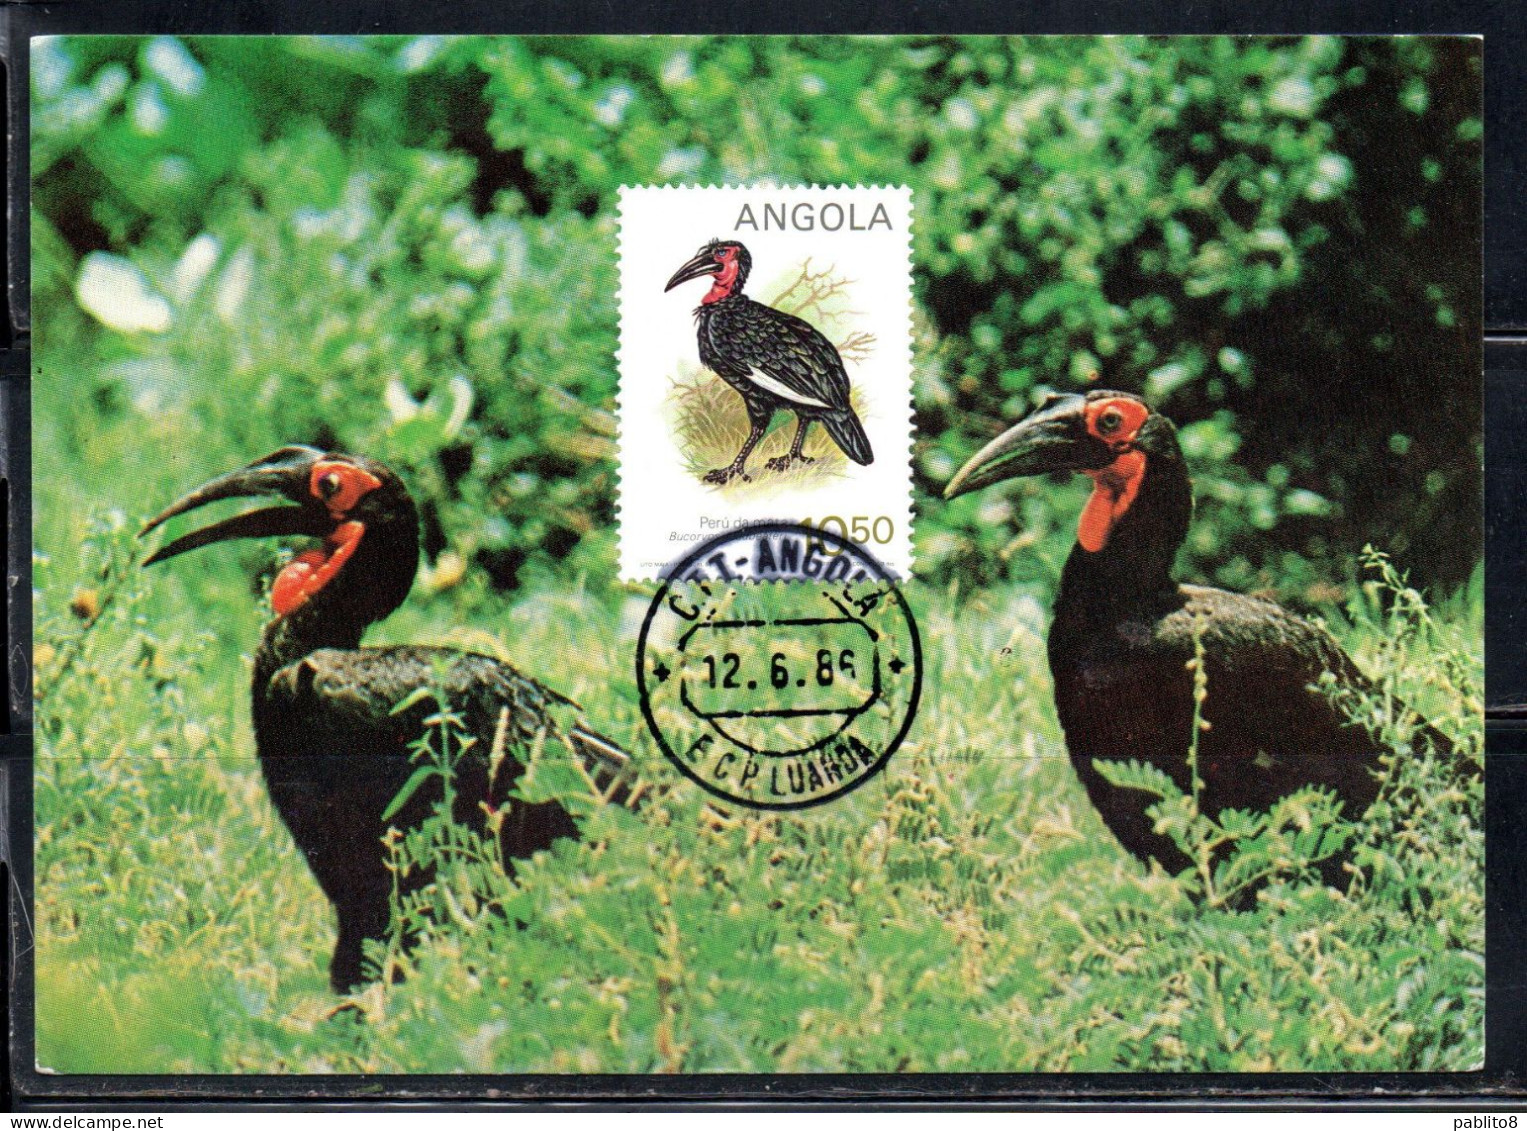 ANGOLA 1984 LOCAL BIRDS BUCORVUS LEAD BEATERI BIRD 10.50k MAXI MAXIMUM CARD - Angola